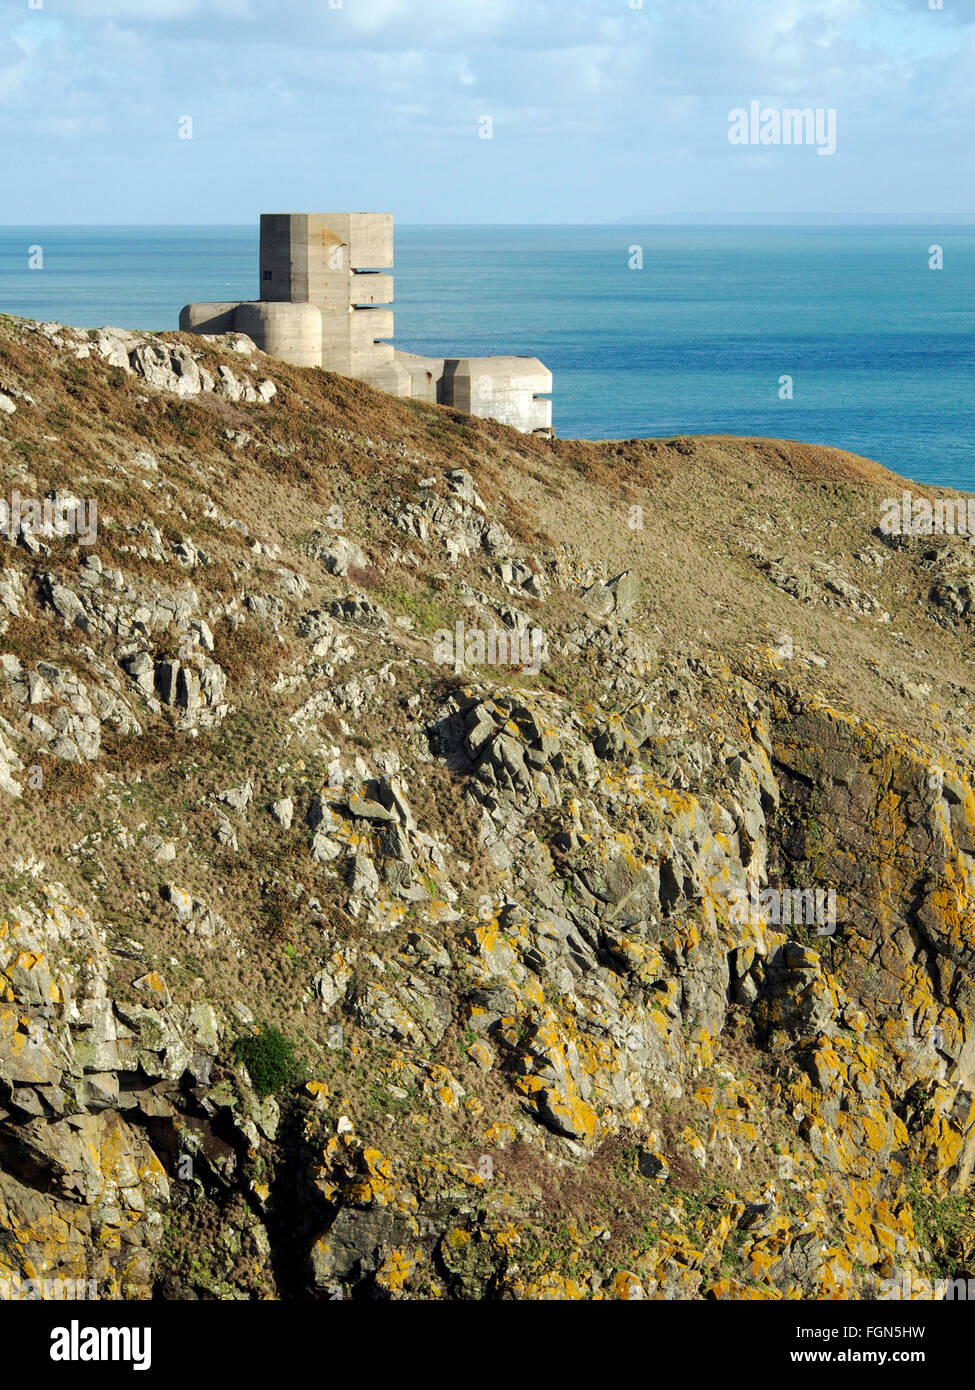 Steile Klippen und WW2 deutsche Bunker und Beobachtung Turm MP4, ein Relikt der Besetzung, Pleimnont Punkt, Guernsey, Channel Islands. Stockfoto